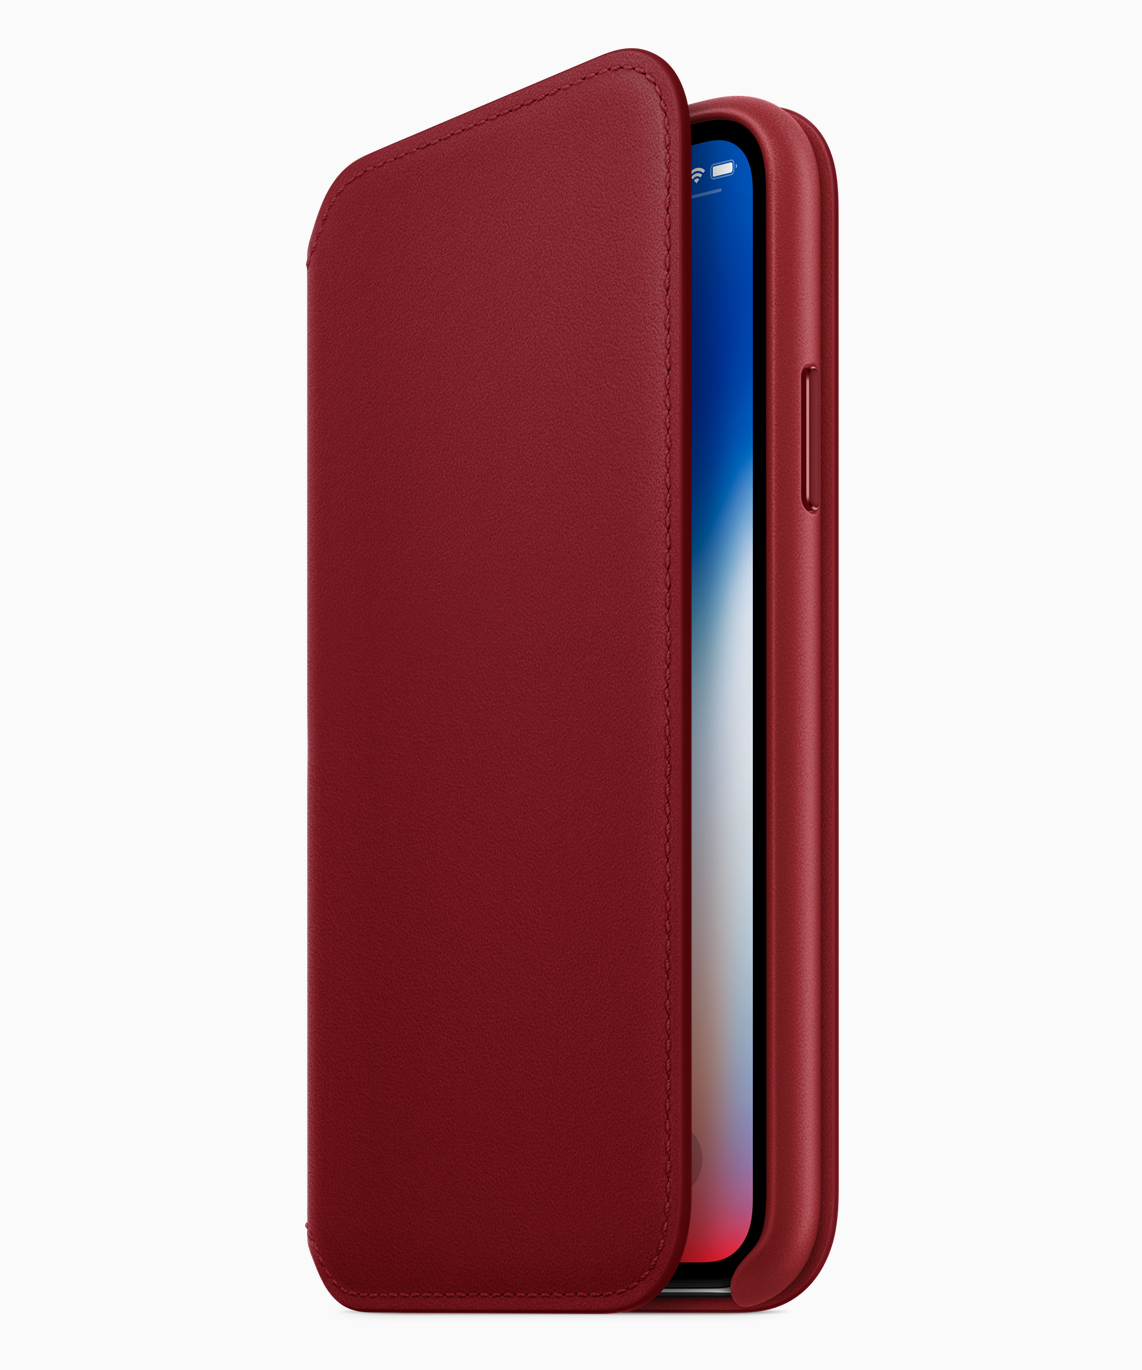 Kırmızı renkli iPhone 8 ve 8 Plus duyuruldu!